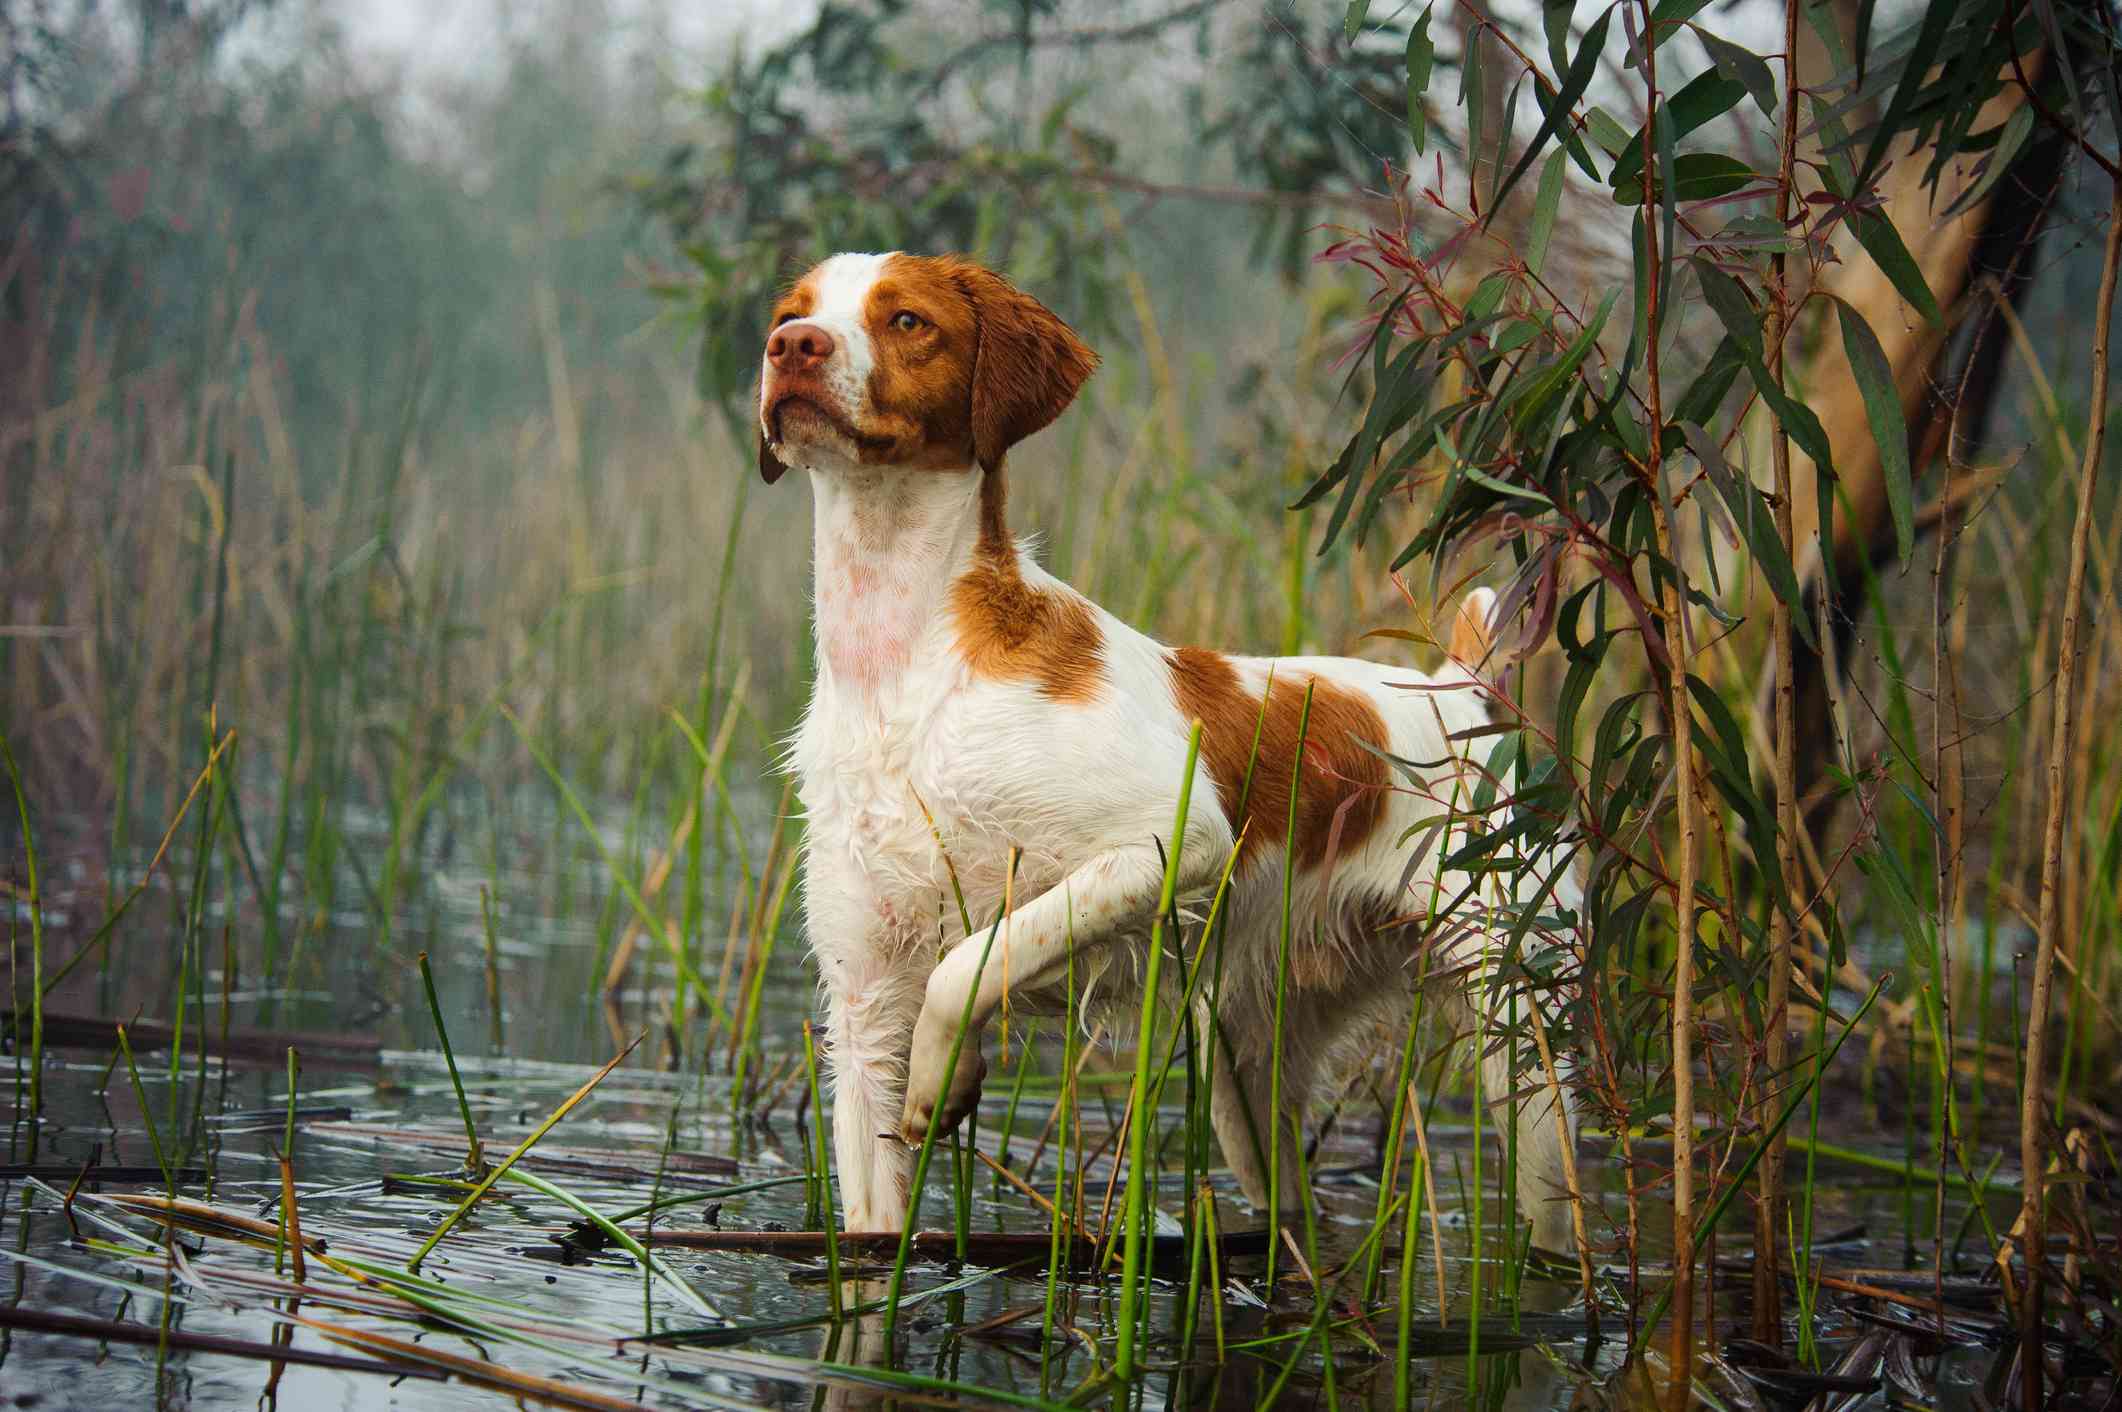 sazlıkta suya girmiş tek ayağını kaldırmış kahverengi beyaz köpek